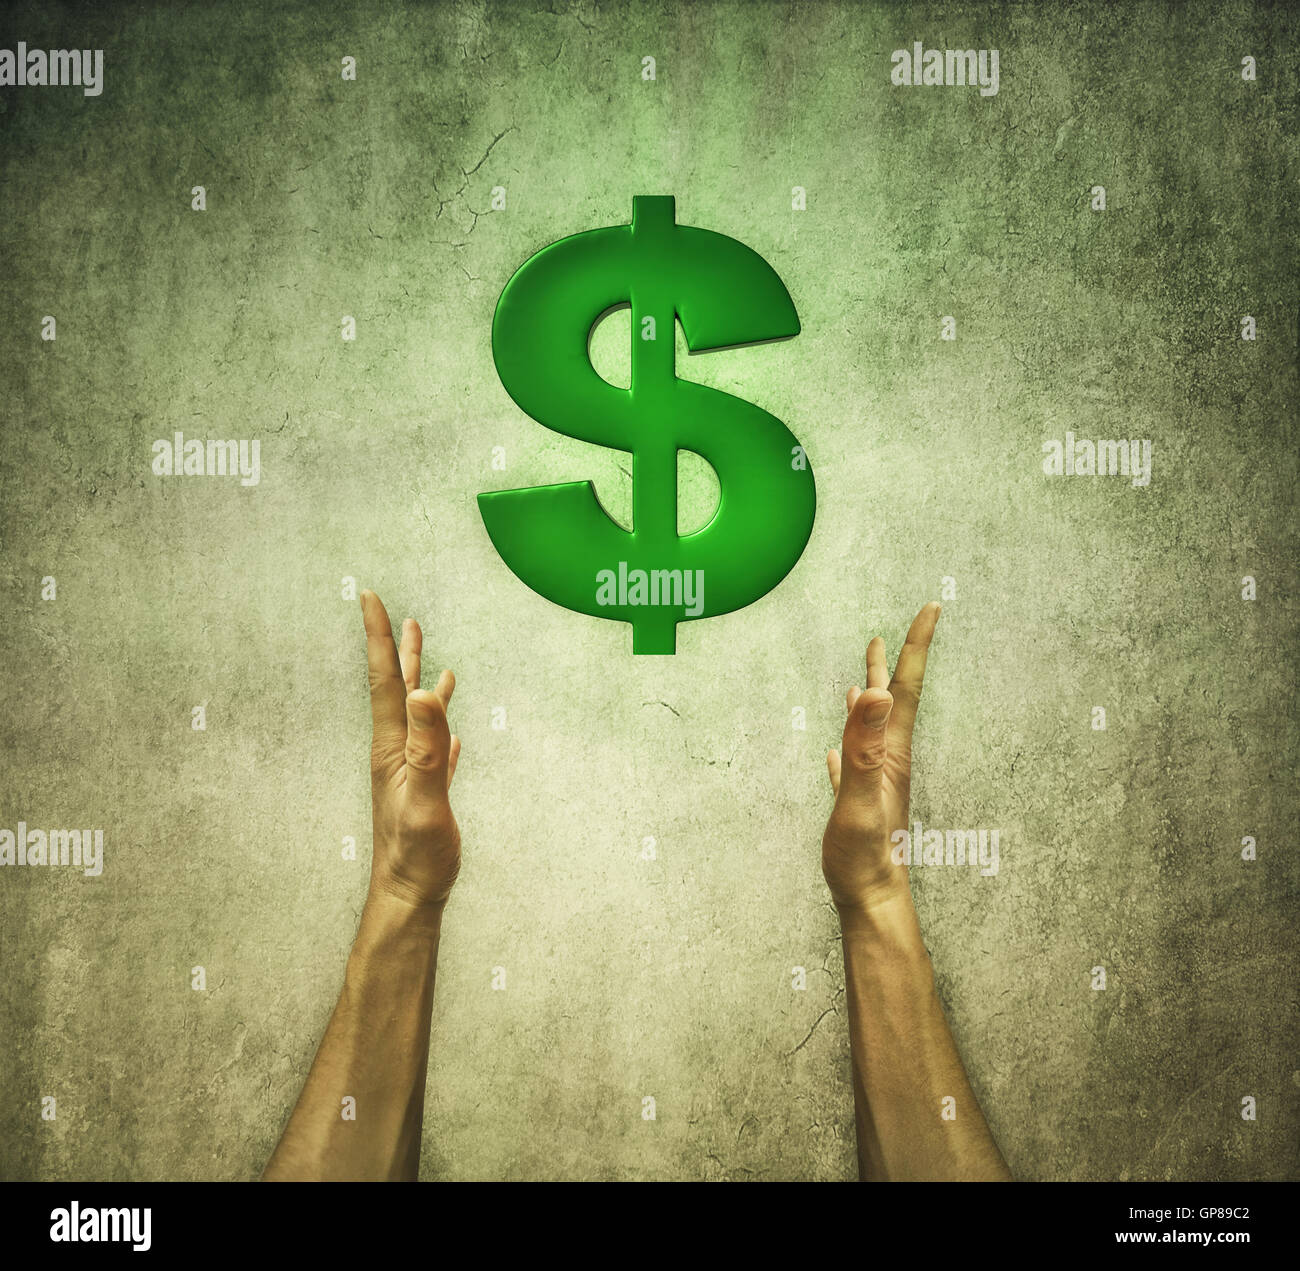 Nahaufnahme von zwei menschliche Hände halten ein grünes Dollarzeichen. Finanzkonzept Stockfoto